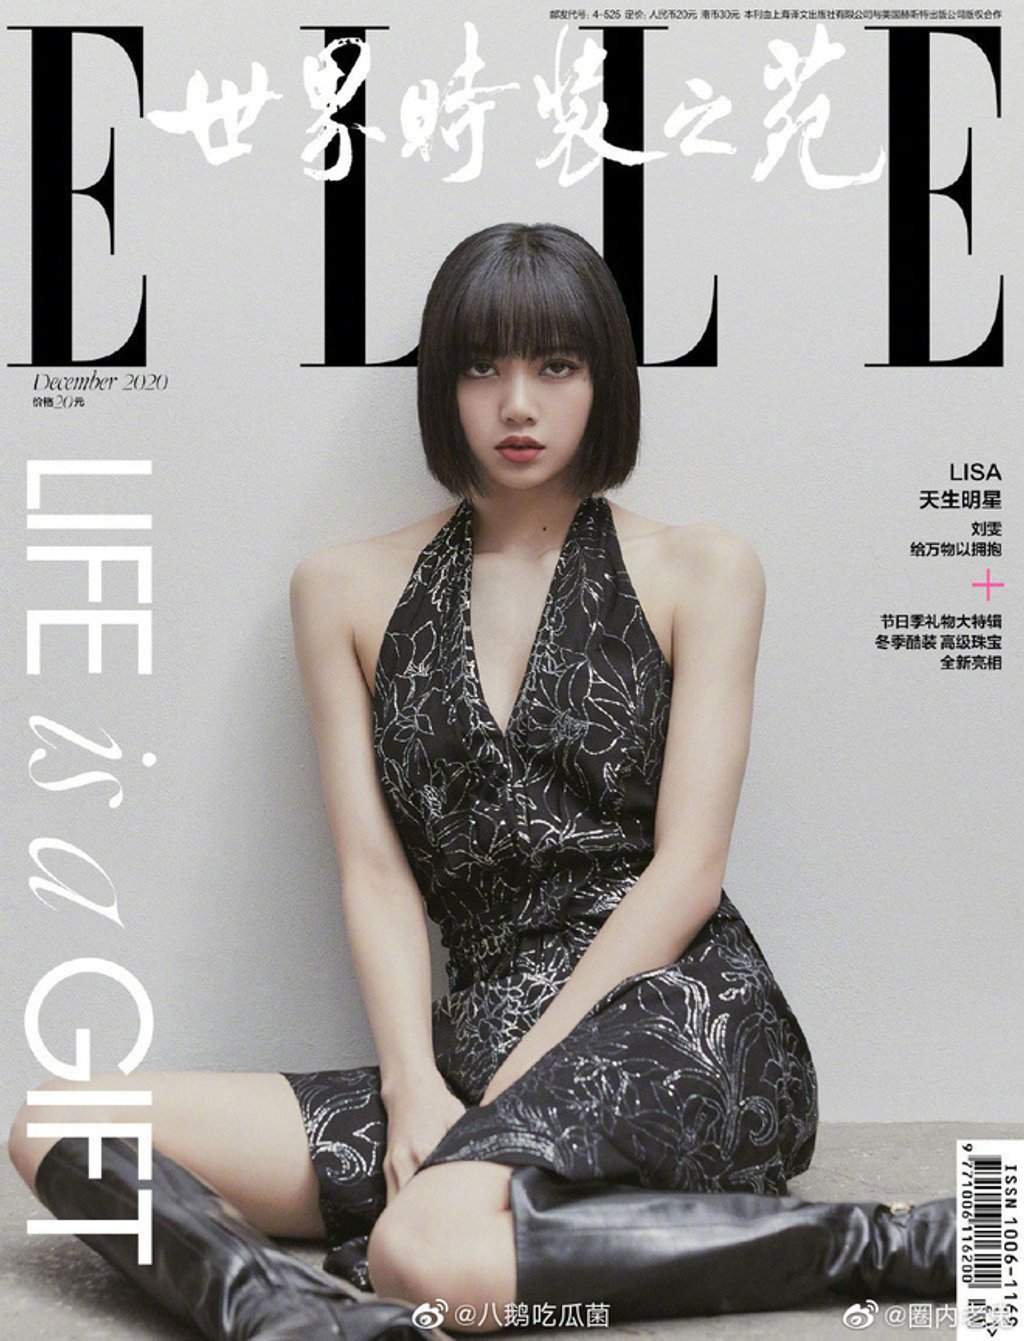 Lisa và Đường Yên trên trang bìa Elle Trung Quốc số tháng 12